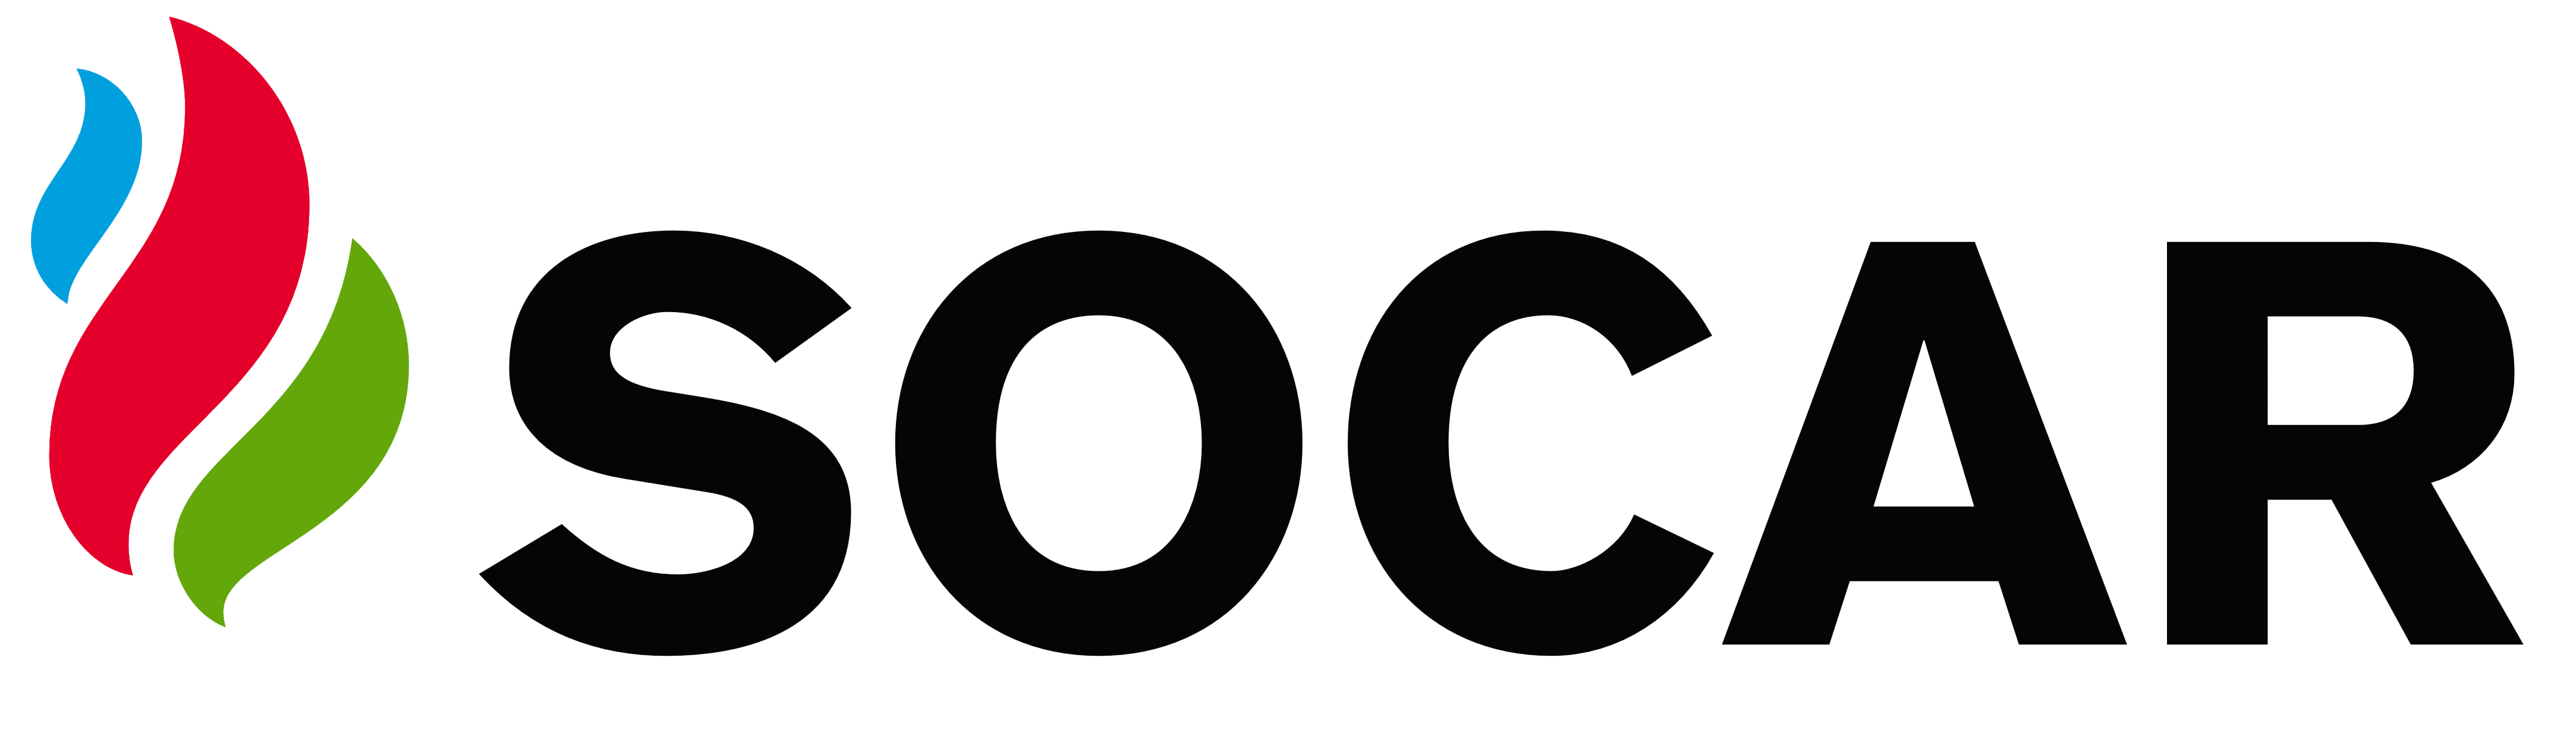 Socar Logo PNG - 32761